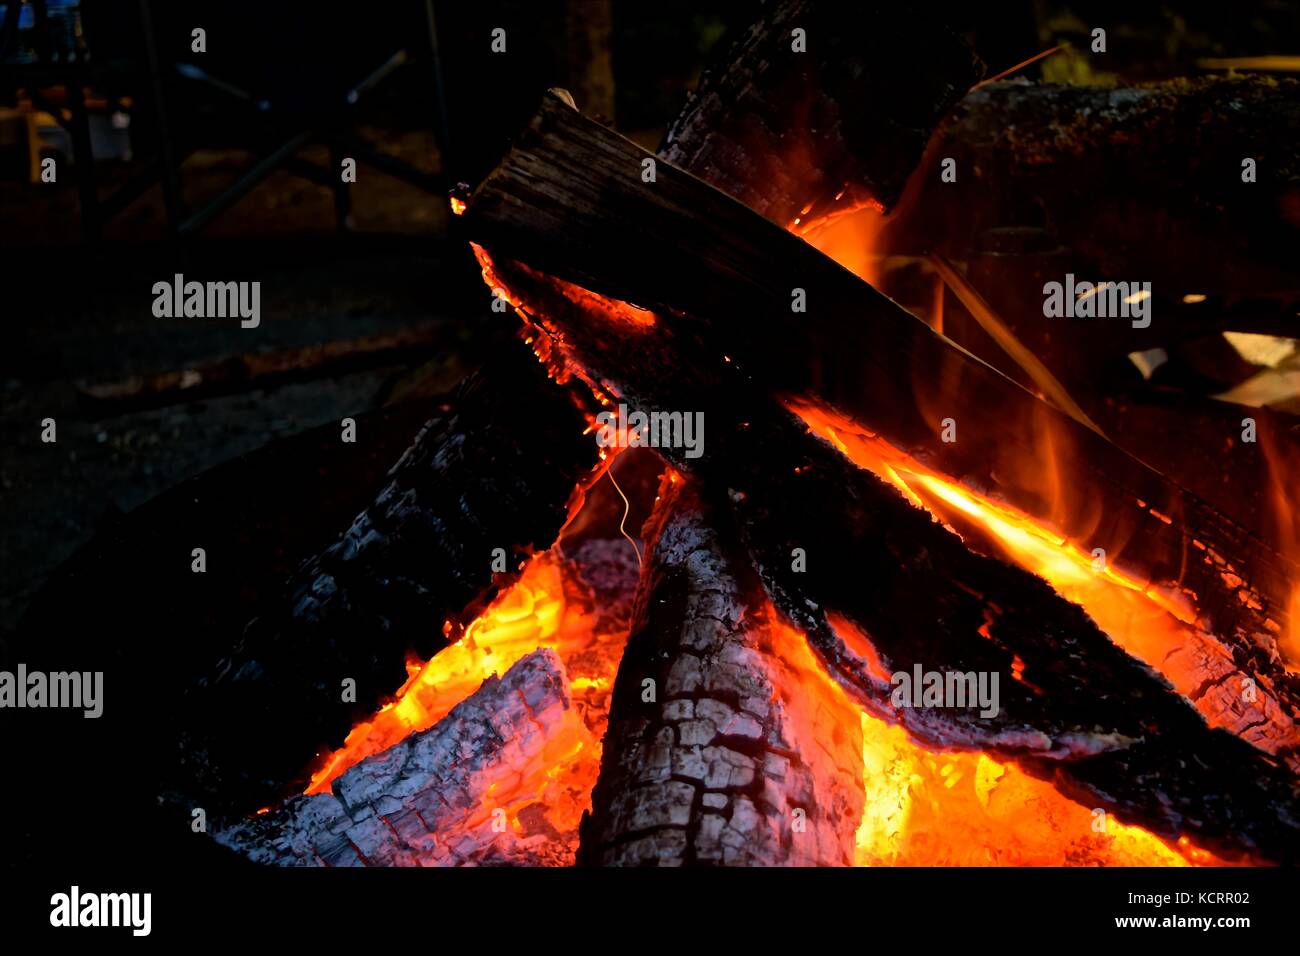 Eine hypnotisierende Lagerfeuer auf einer kühlen Nacht der Campingplatz bringt Wärme und sammelt Menschen um. Stockfoto